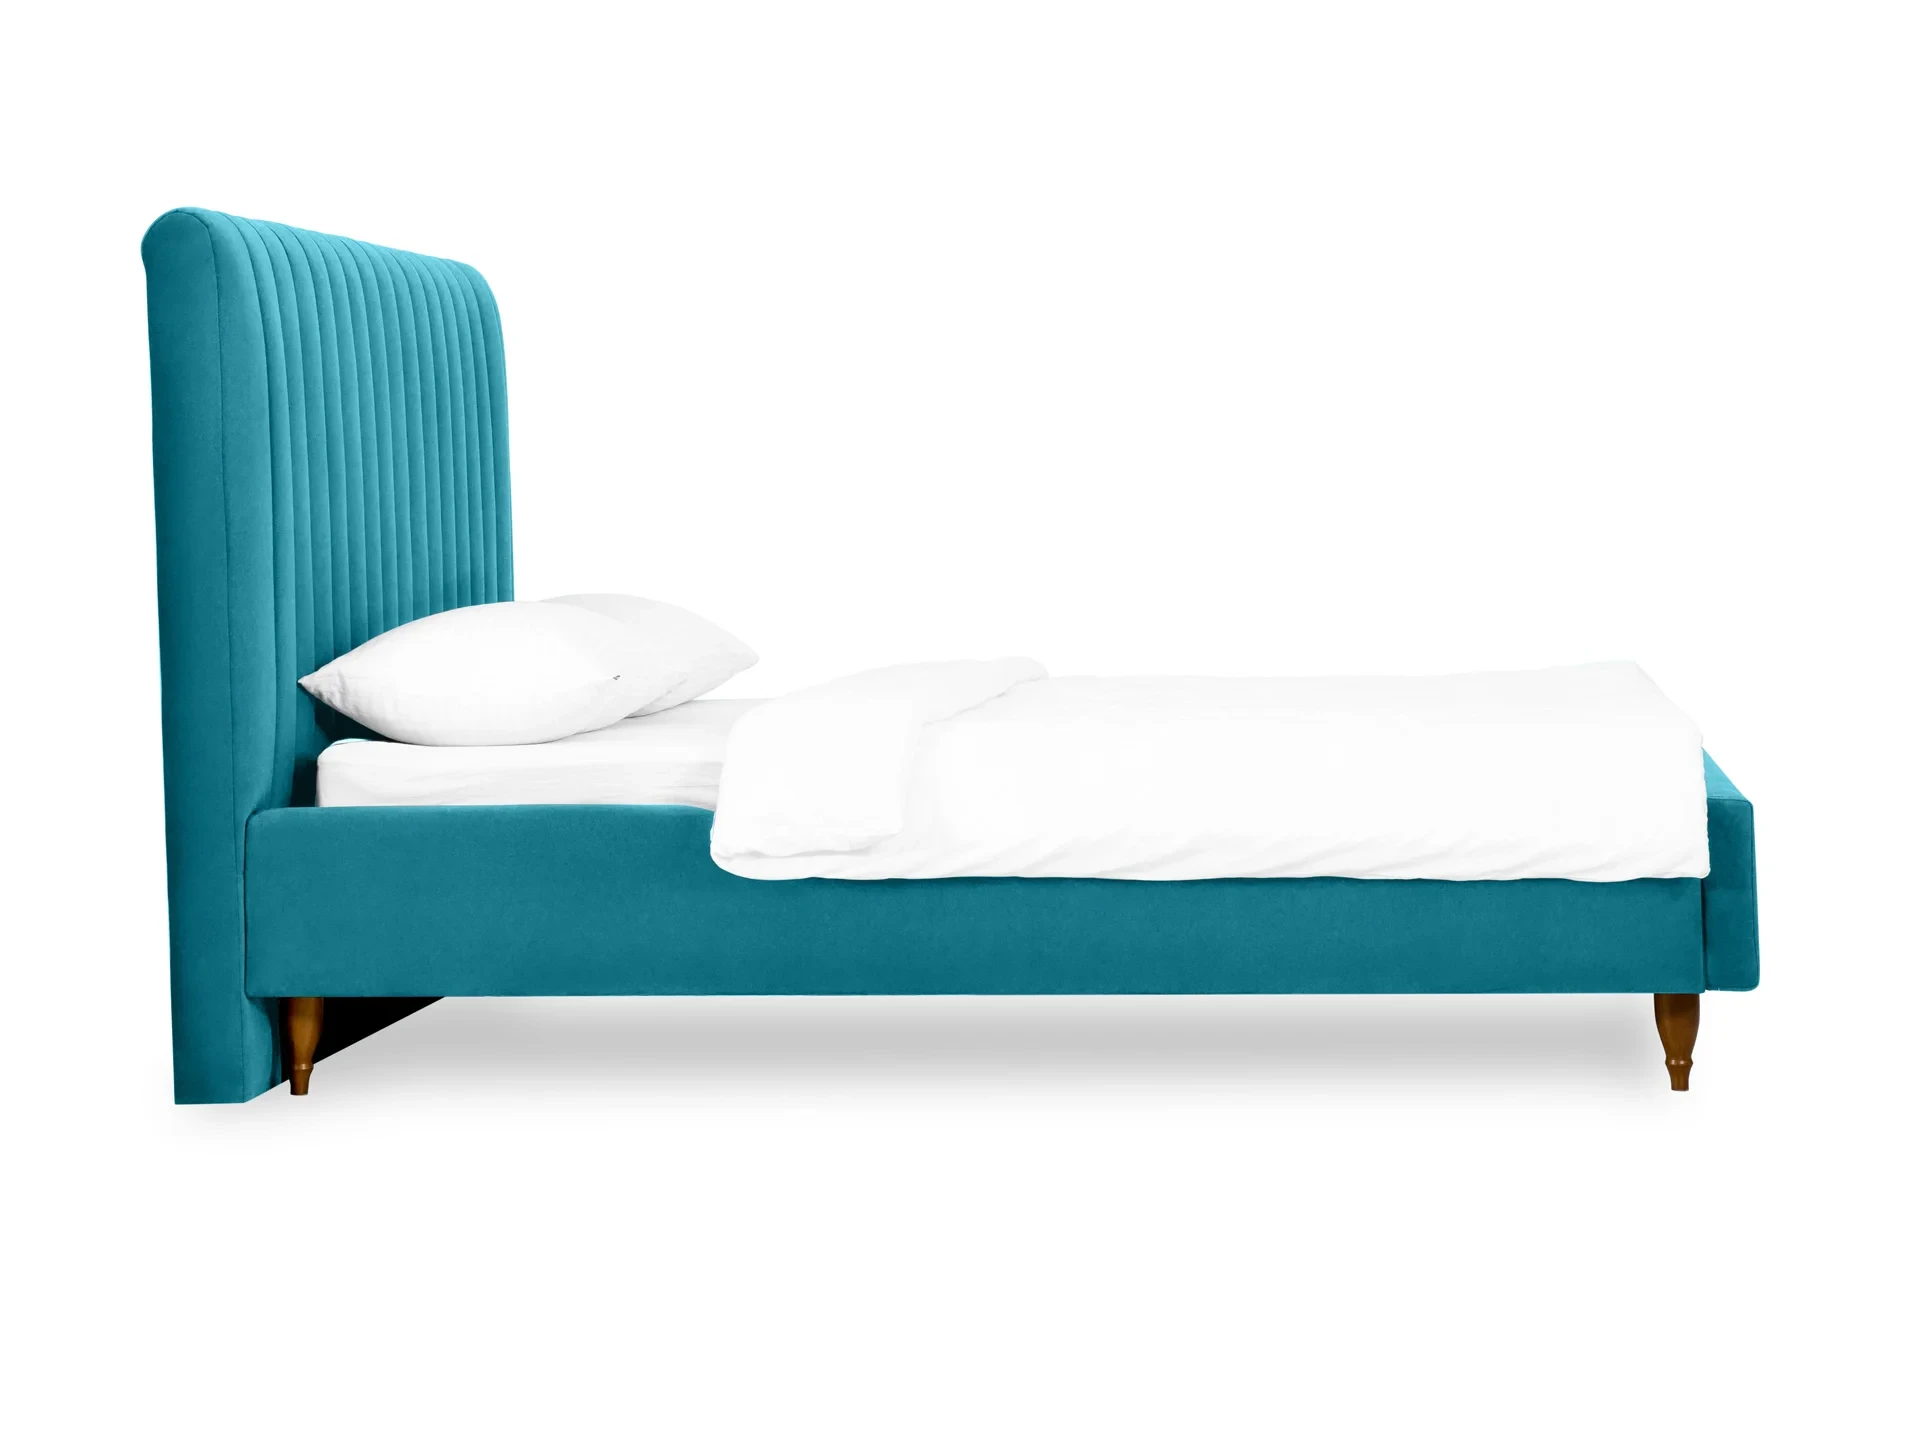 Кровать Dijon с мягким изголовьем 160х200 голубой 588172